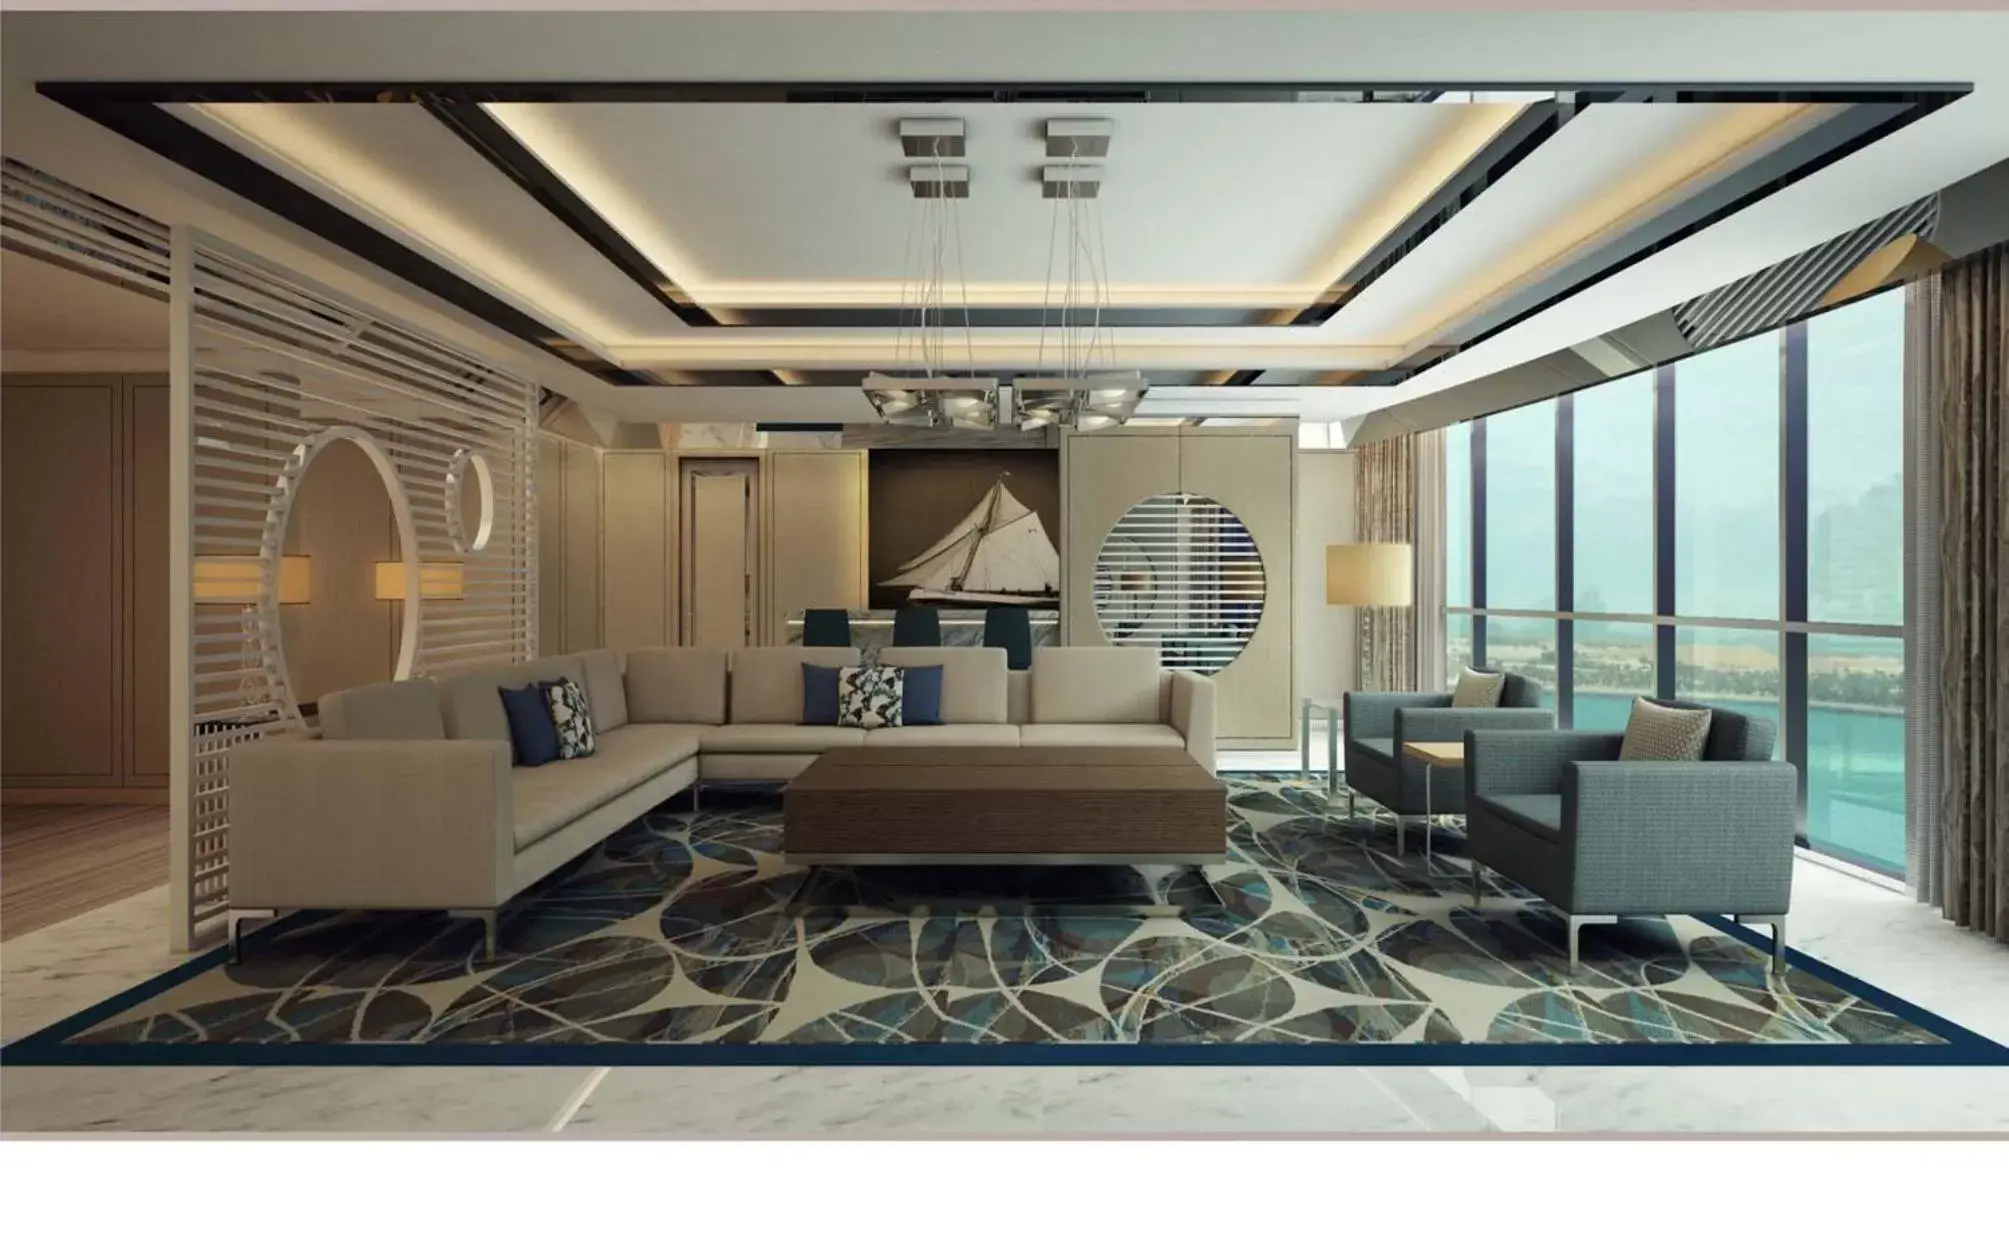 Lobby or reception in Royal M Hotel & Resort Abu Dhabi